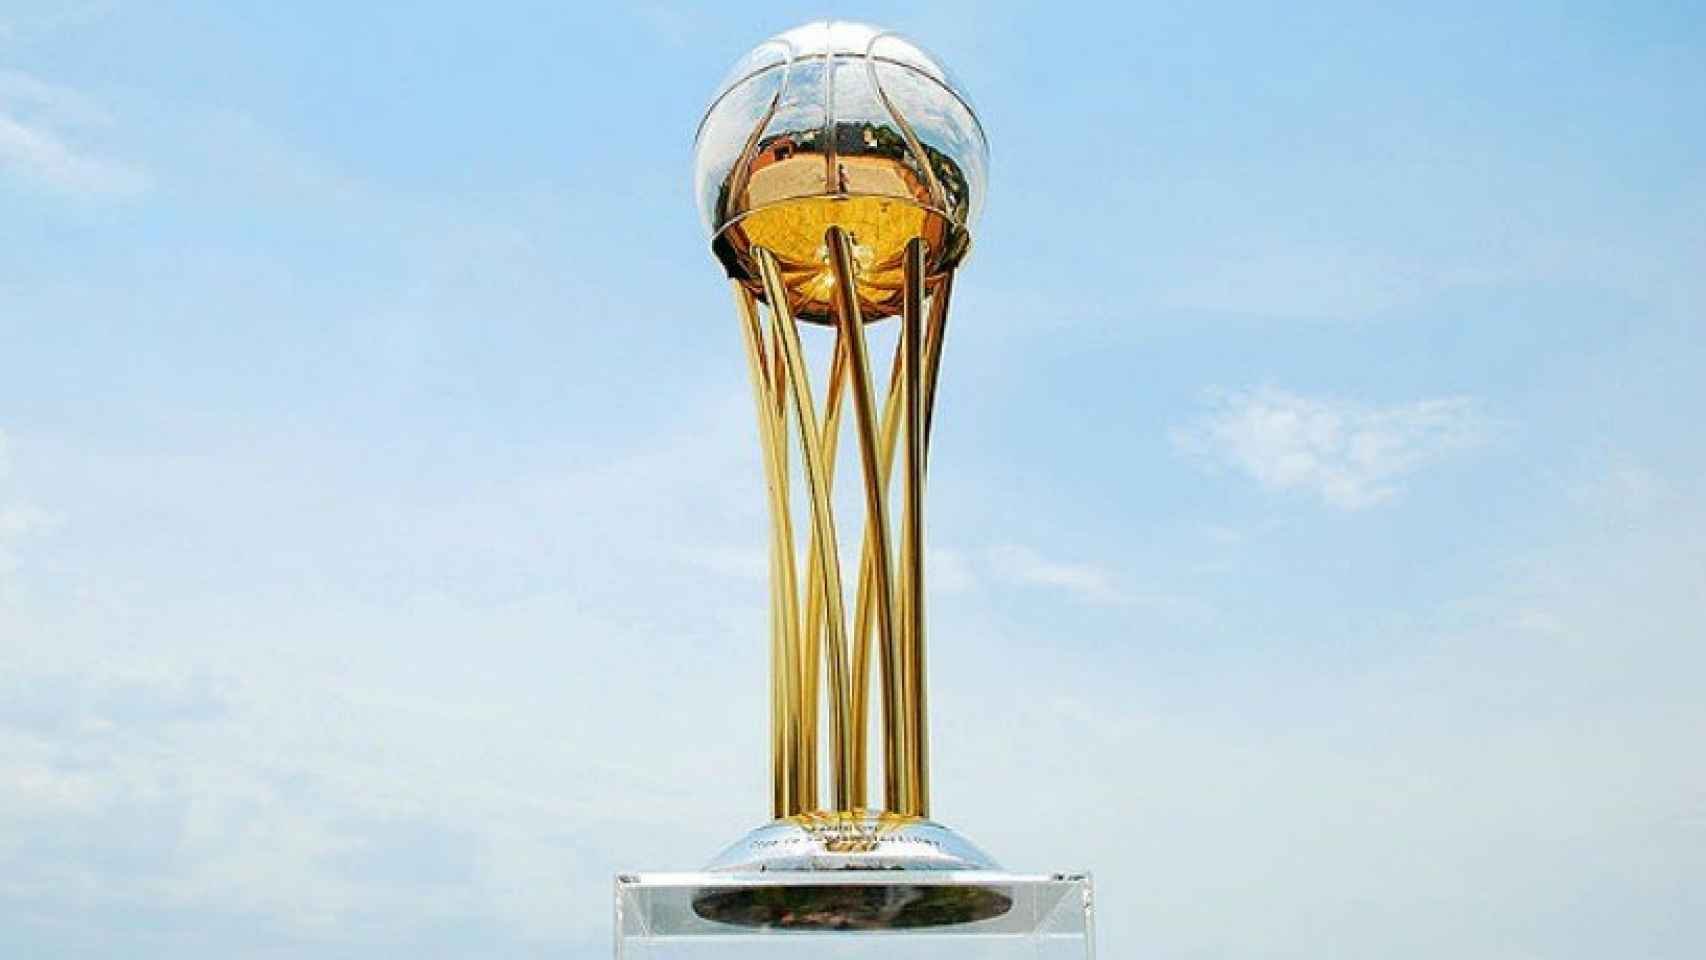 Copa del Rey de baloncesto. Foto: acb.com